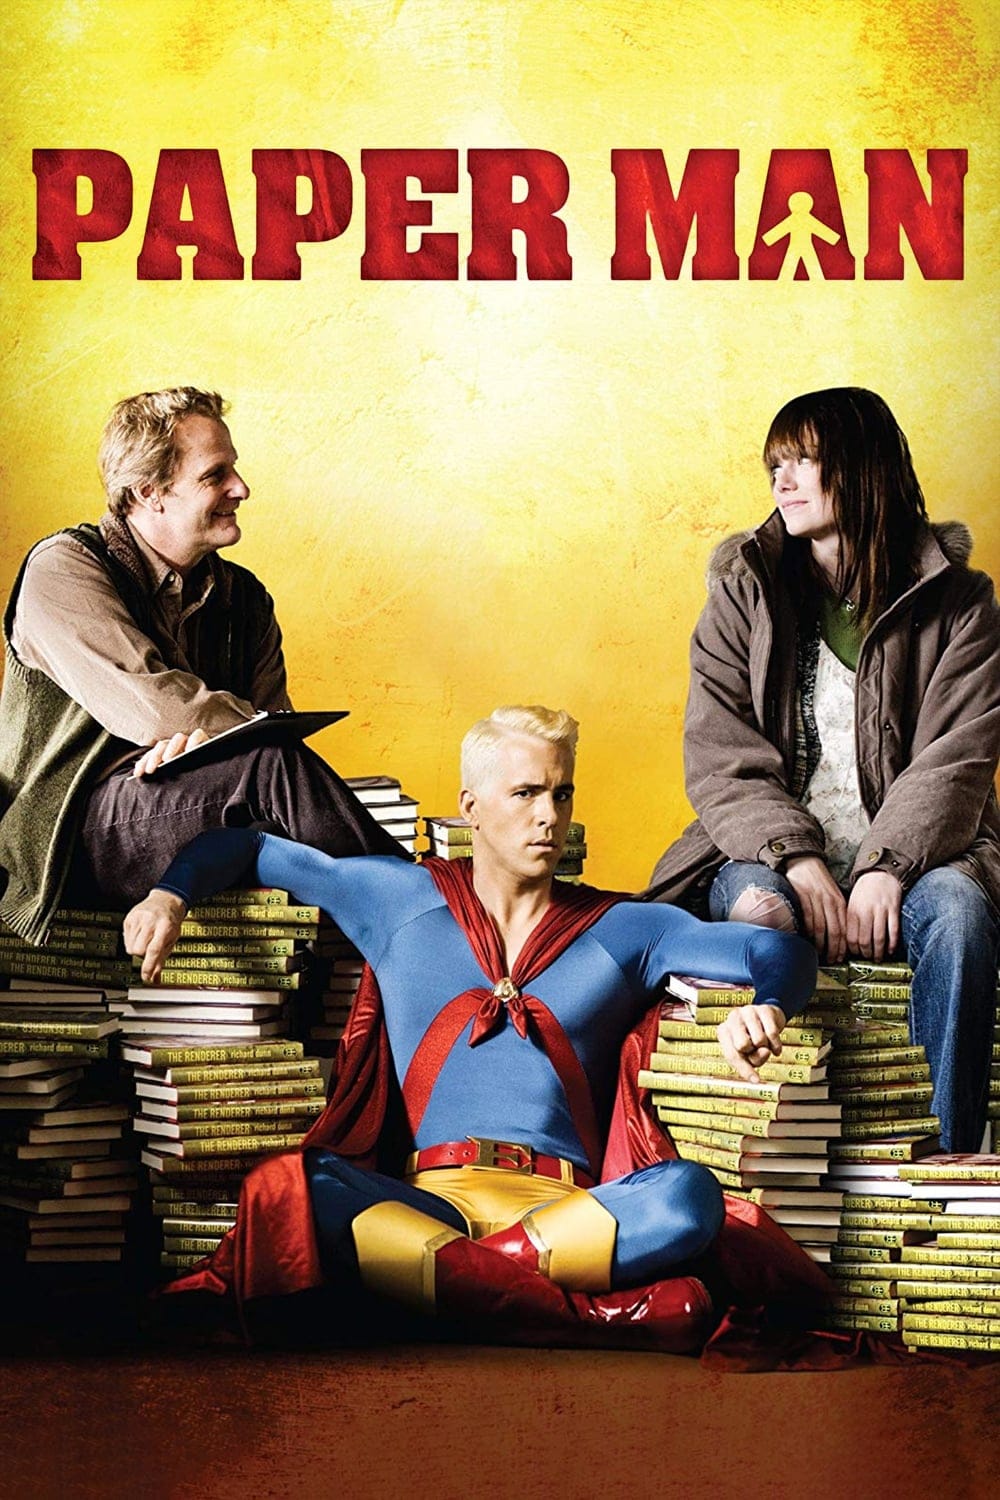 Plakat von "Paper Man - Zeit erwachsen zu werden"